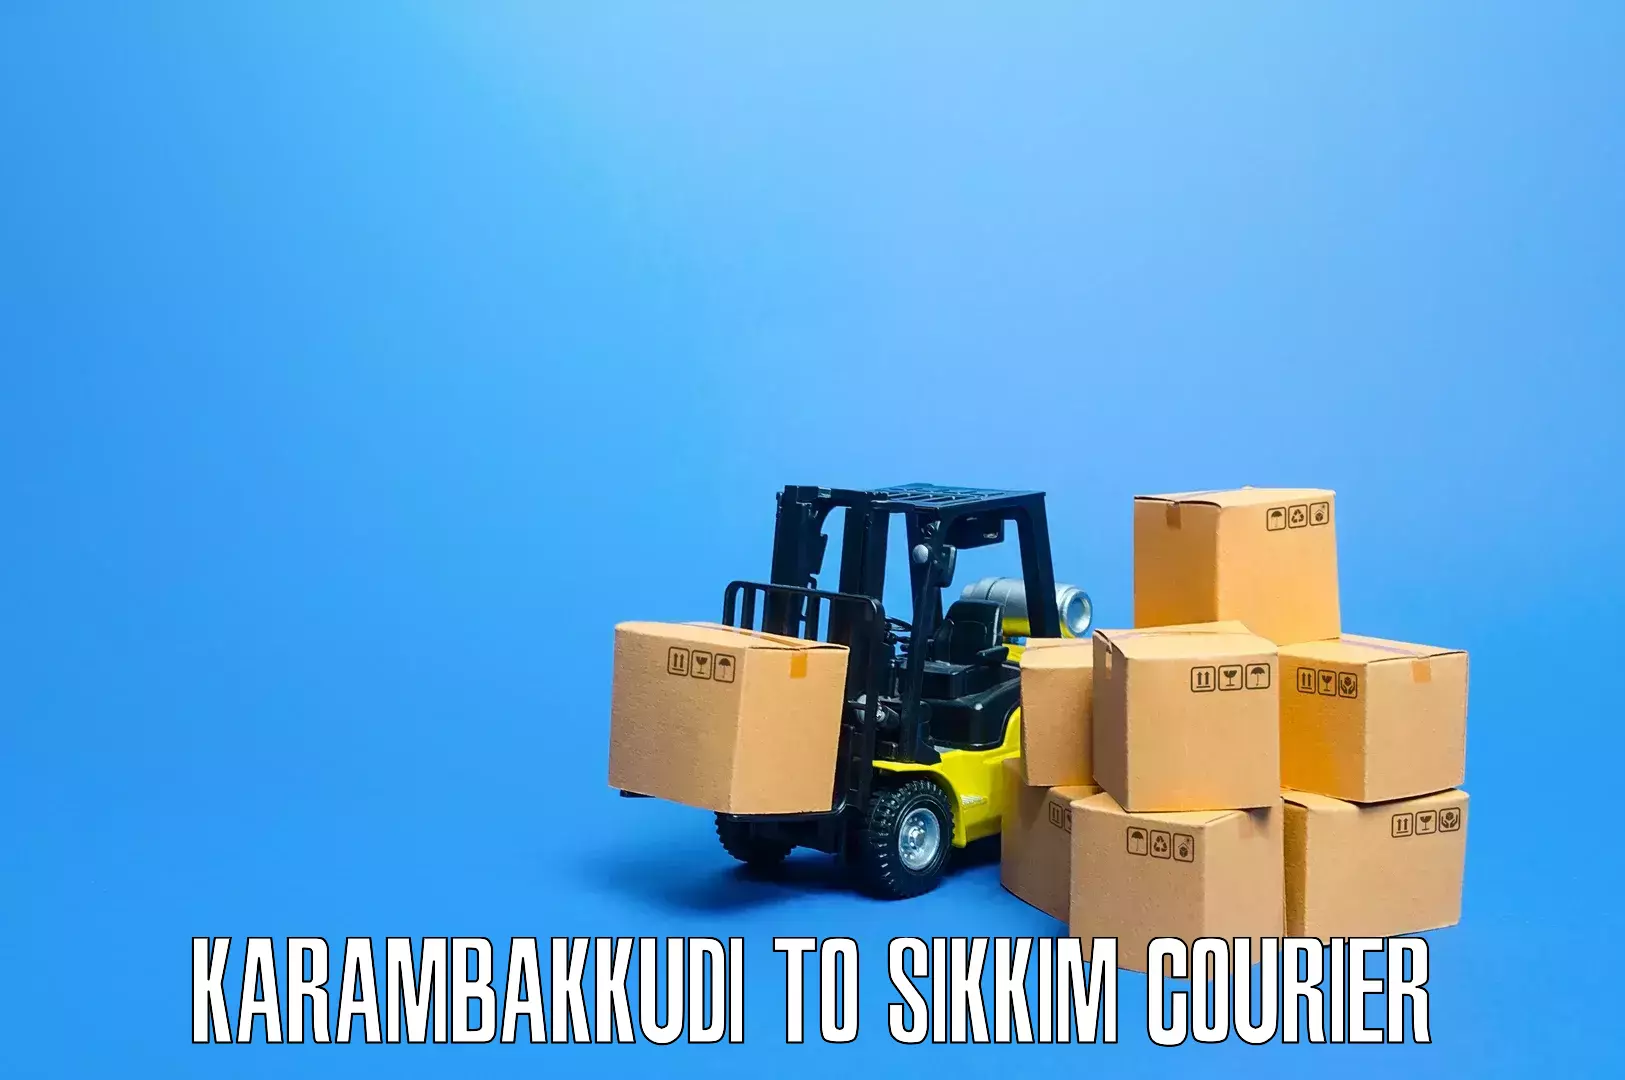 Furniture moving service Karambakkudi to Geyzing